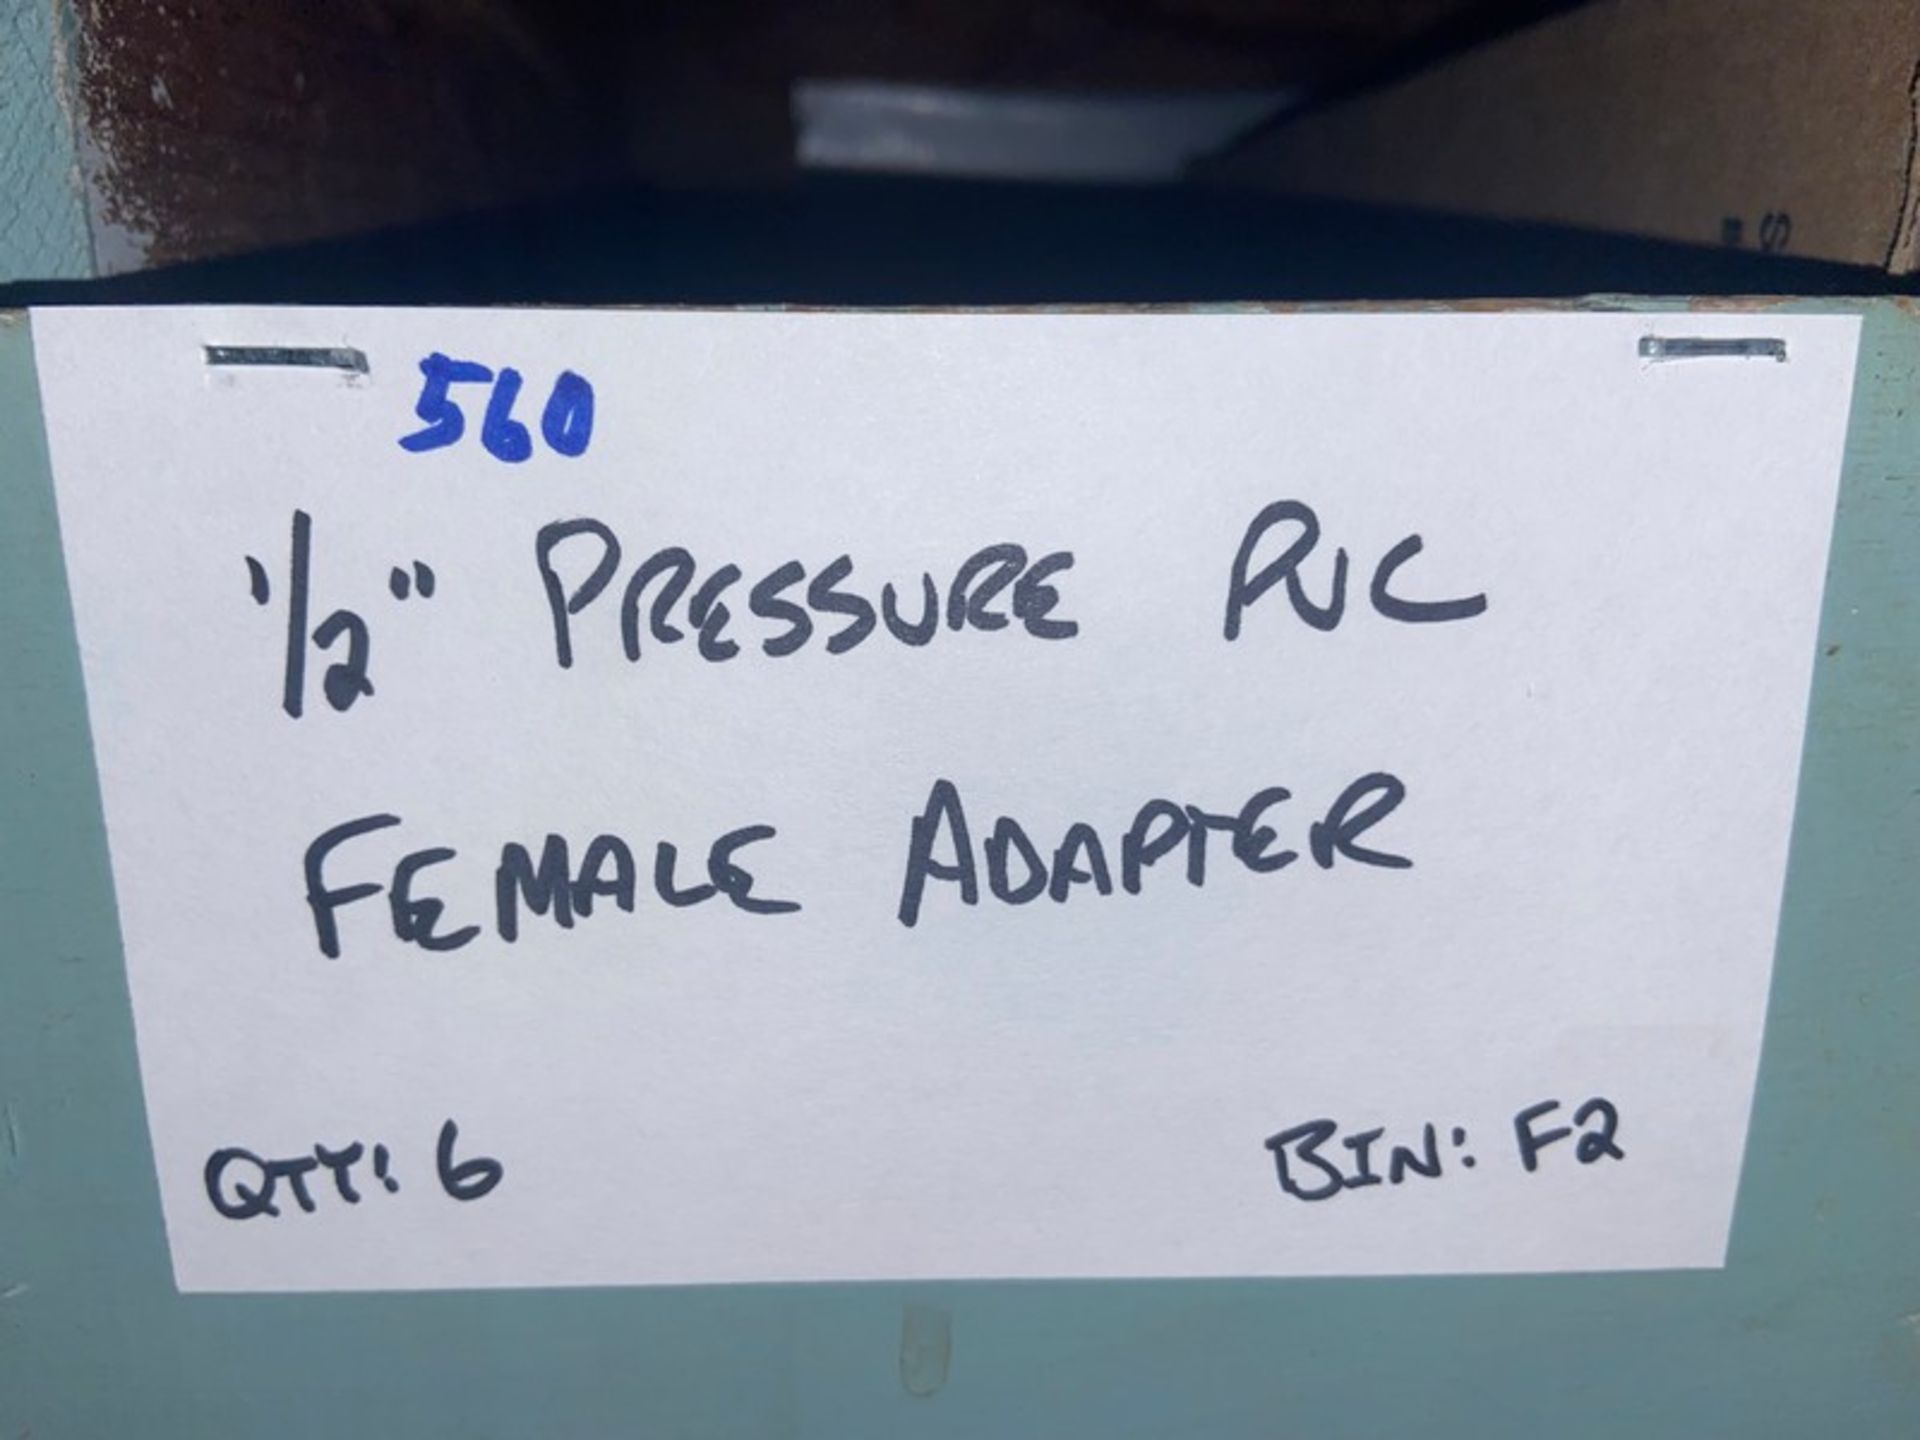 (1) 1/2" Pressure PVC Male Adapter (Bin: F2); (6) 1/2" Pressure PVC Female Adapter (LOCATED IN - Image 6 of 11